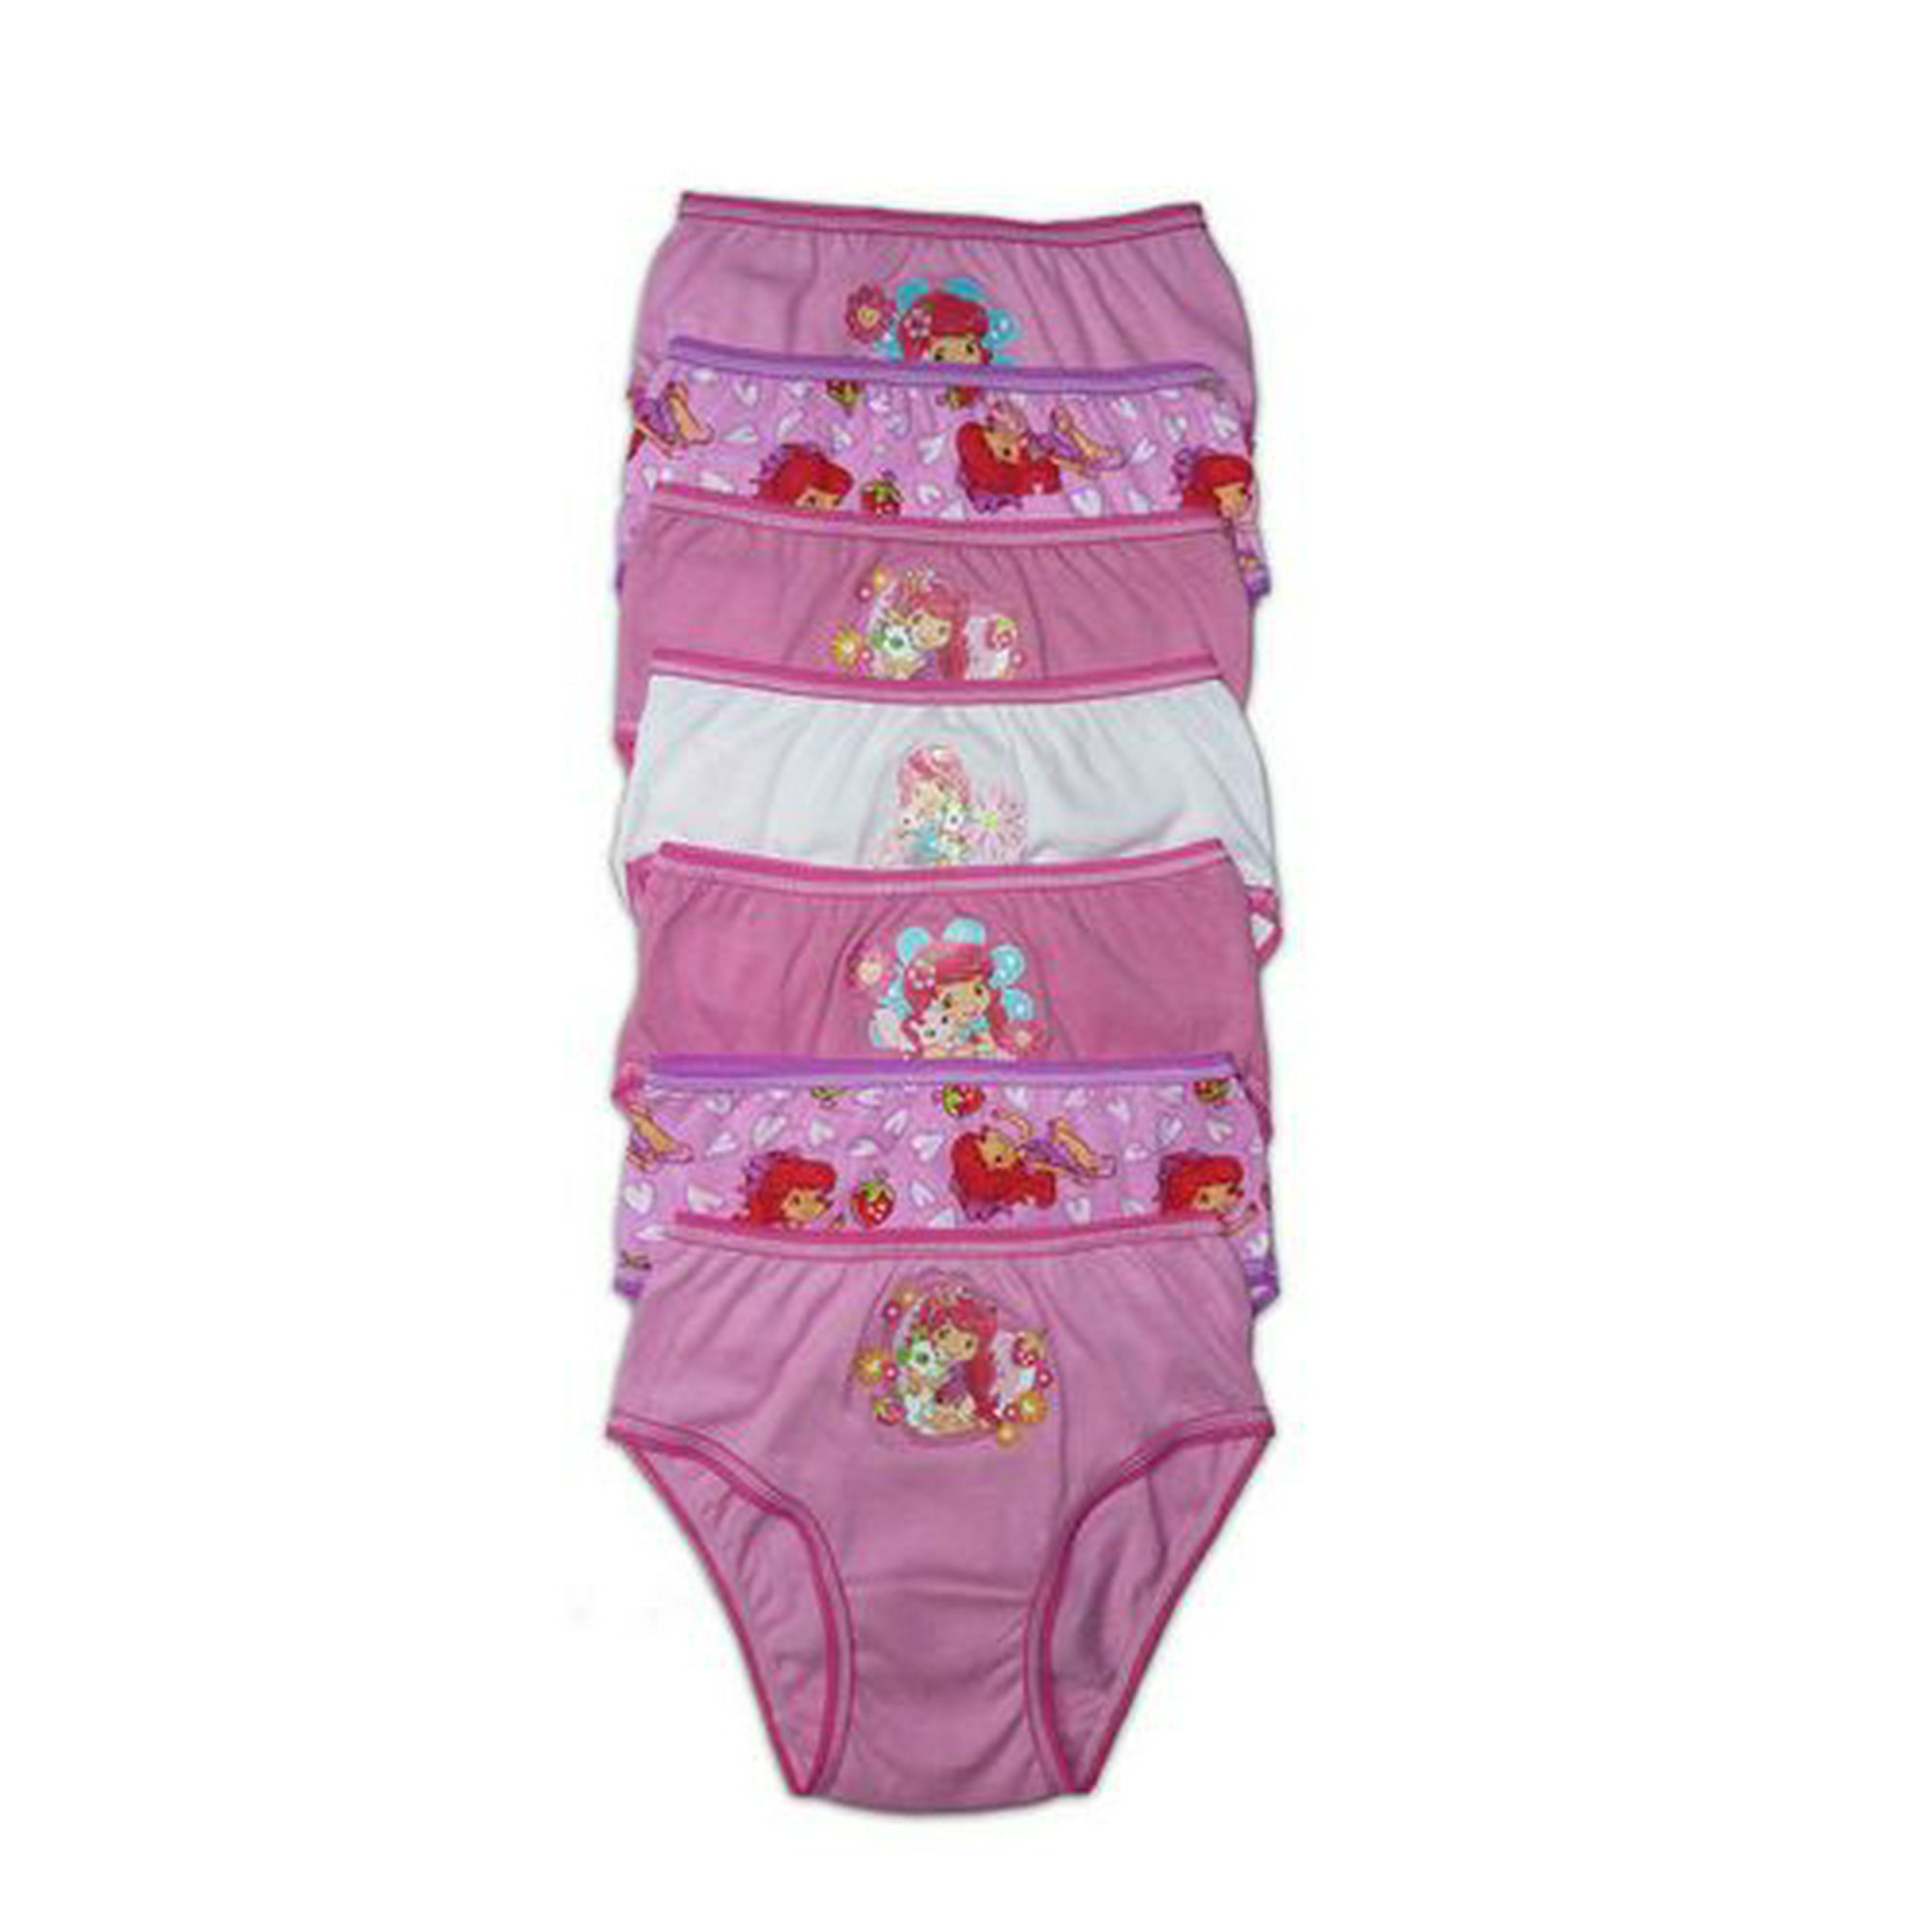 Strawberry Shortcake 7-Pack Underwear 